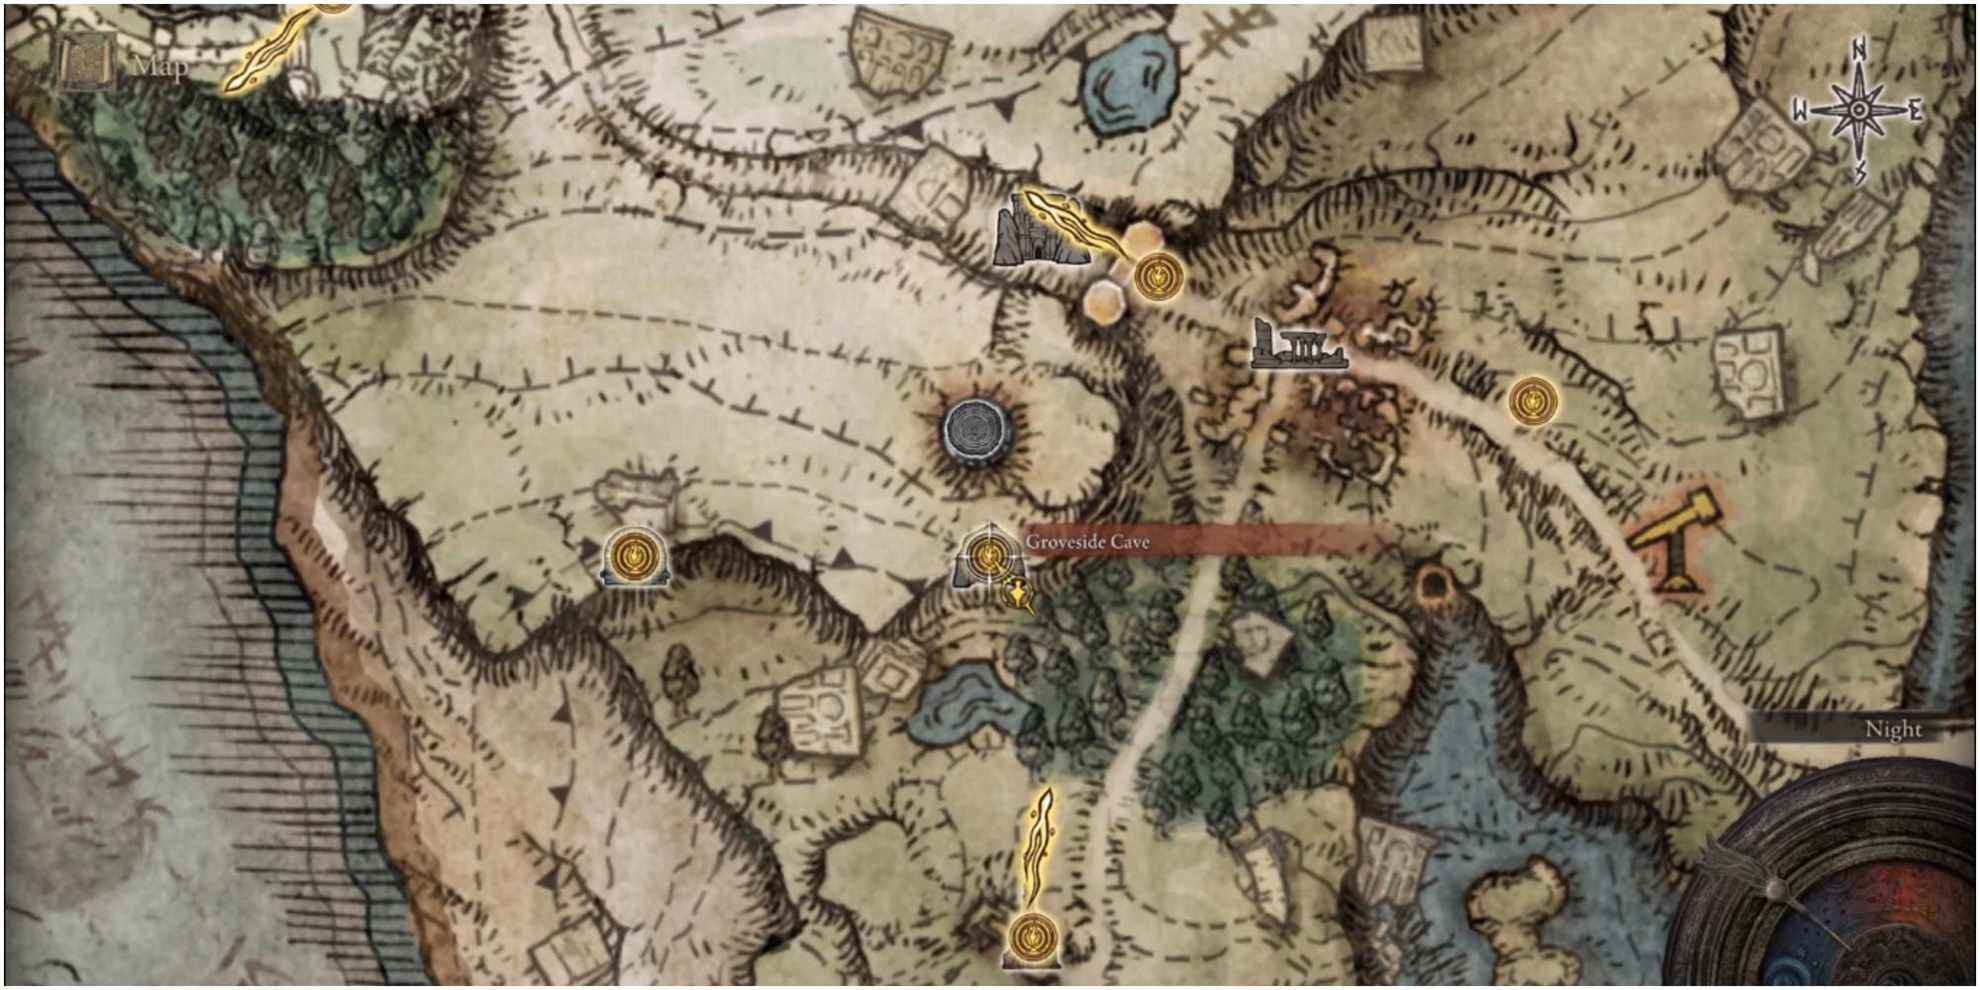 La carte indiquant l'emplacement de la grotte de Groveside. 